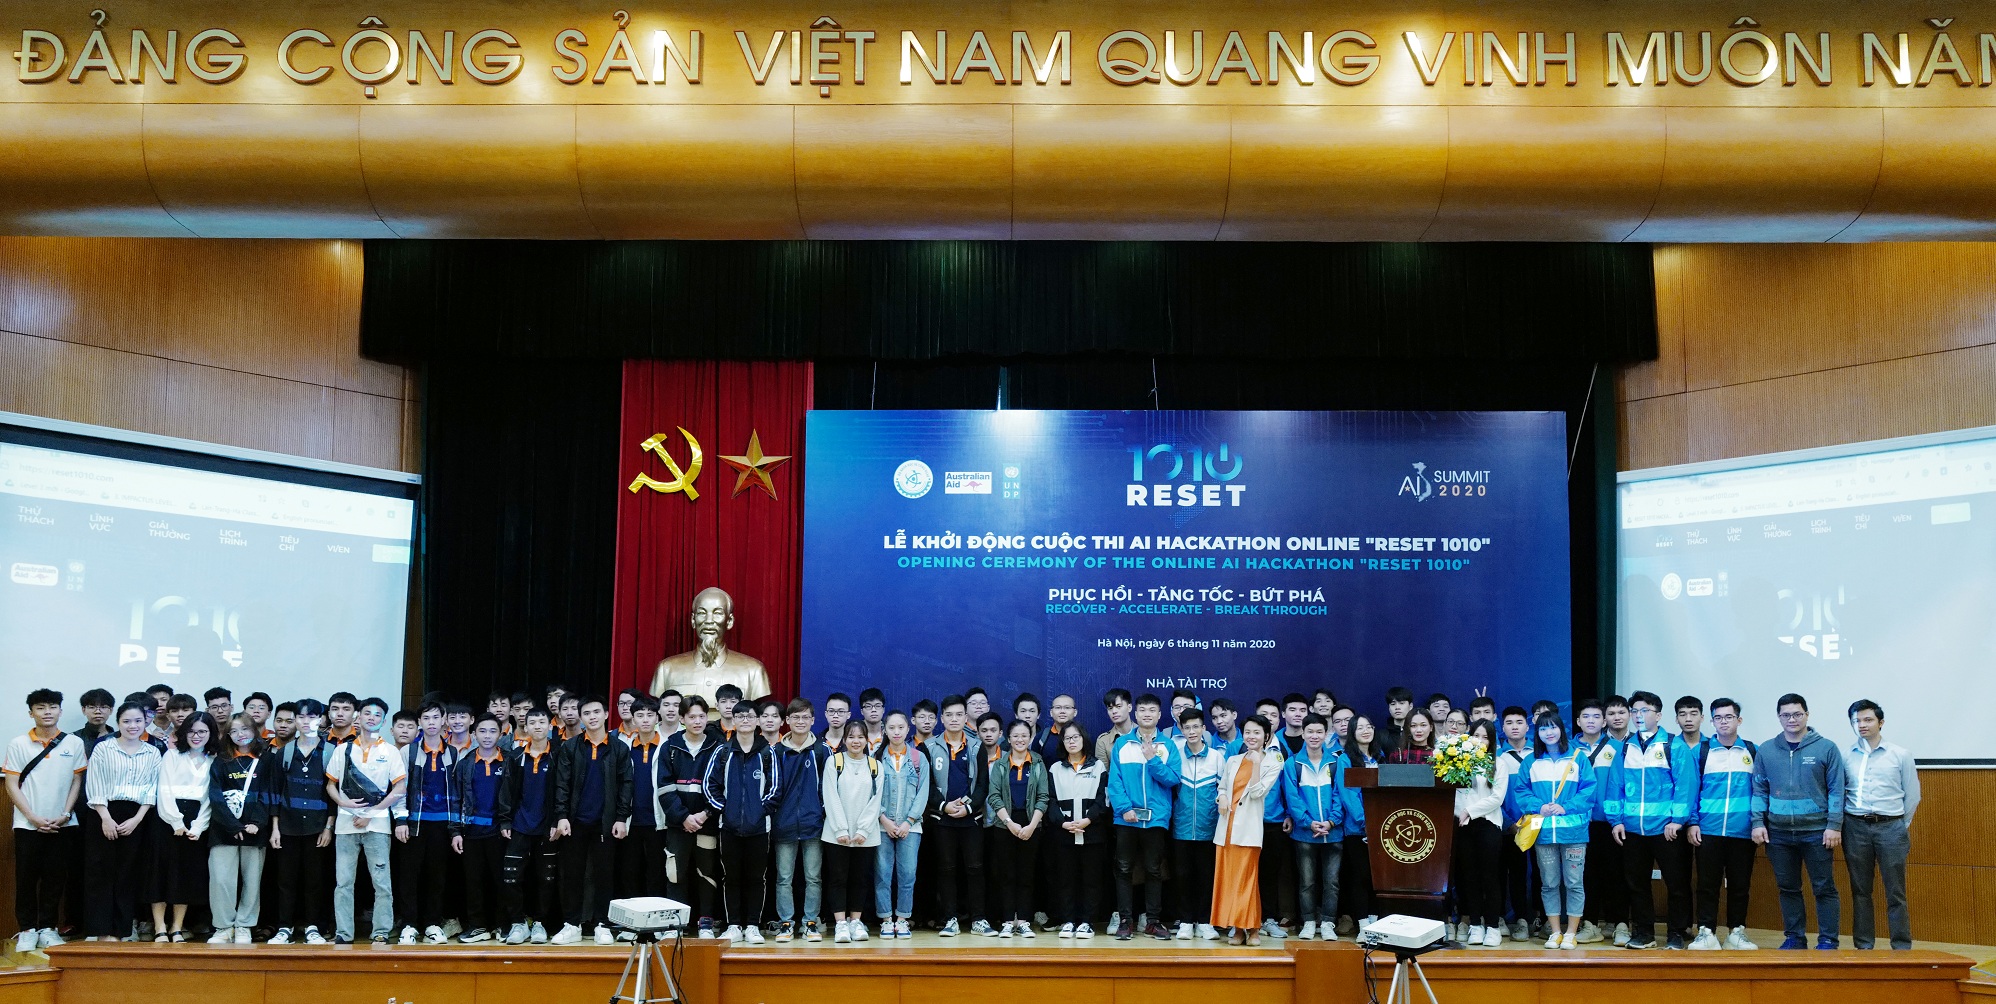 Sinh viên các trường ĐH ở Hà Nội tham gia lễ phát động AI Hackathon RESET 1010 | Ảnh: BTC